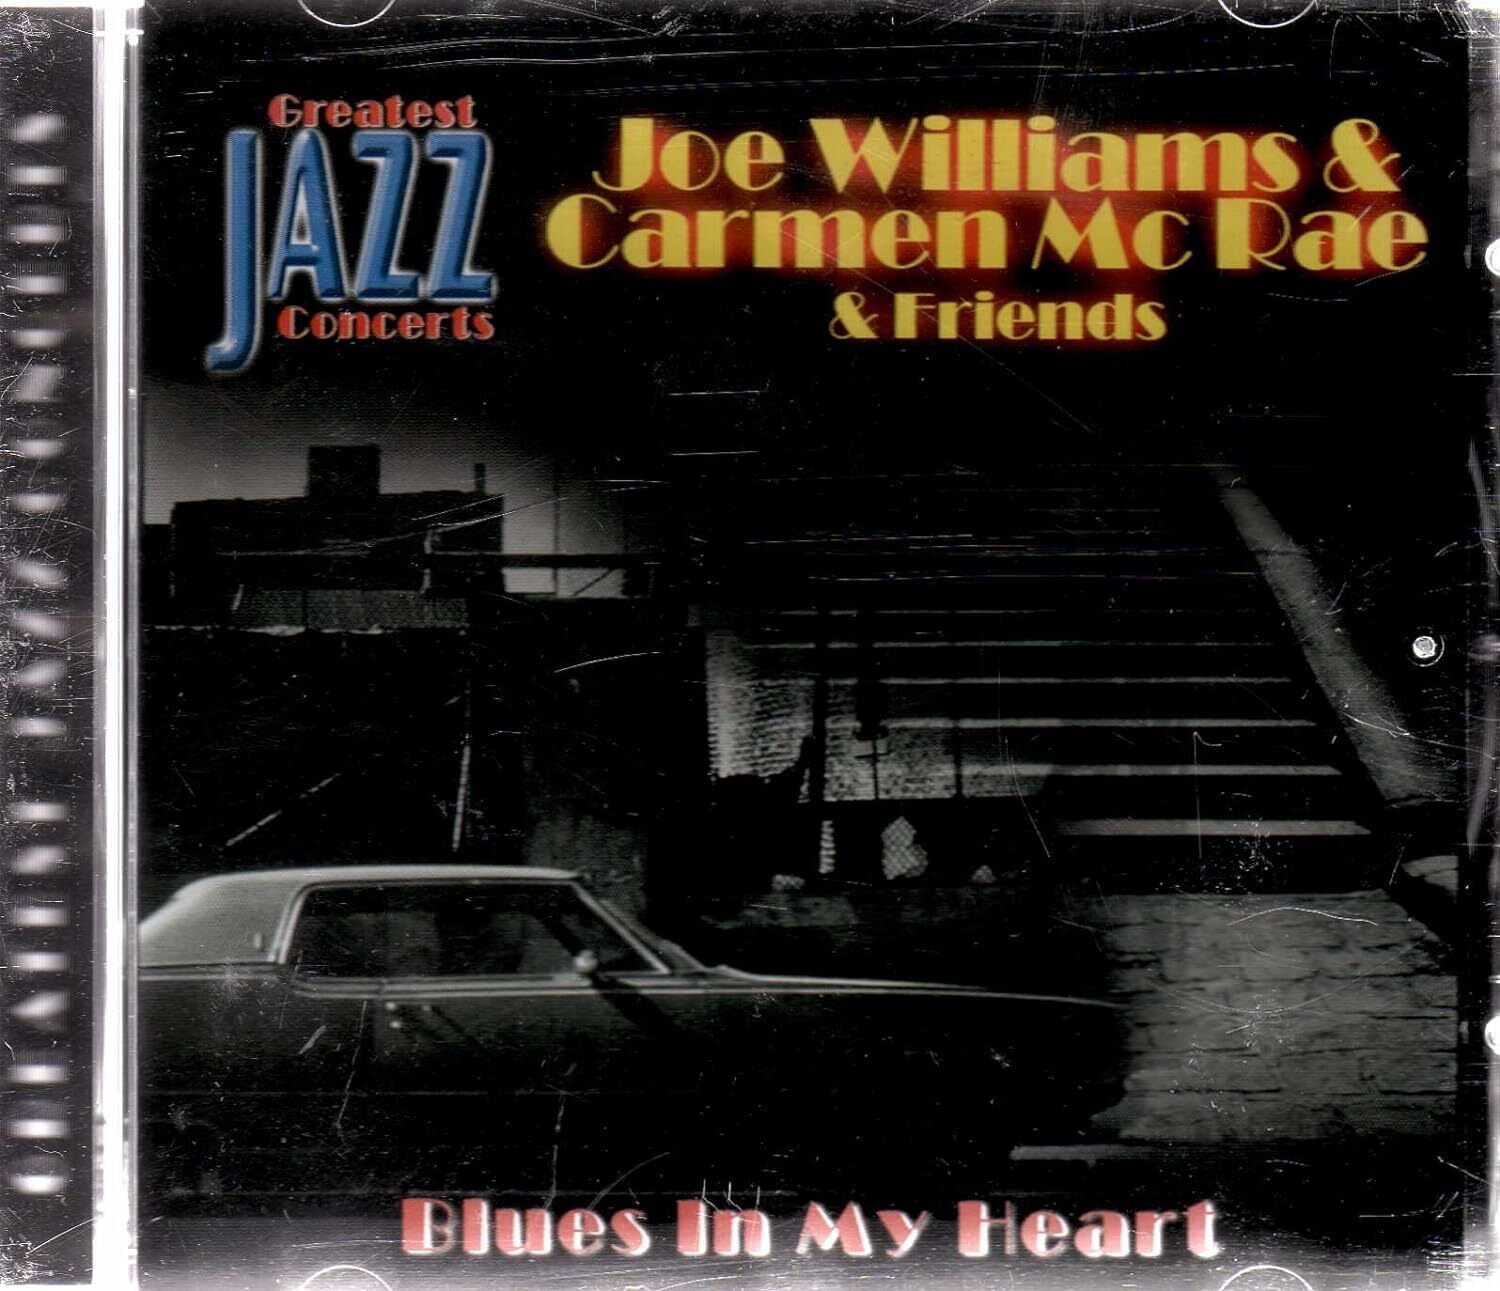 Blues in my heart - Joe Williams and Carmen McRae - Music CD - New